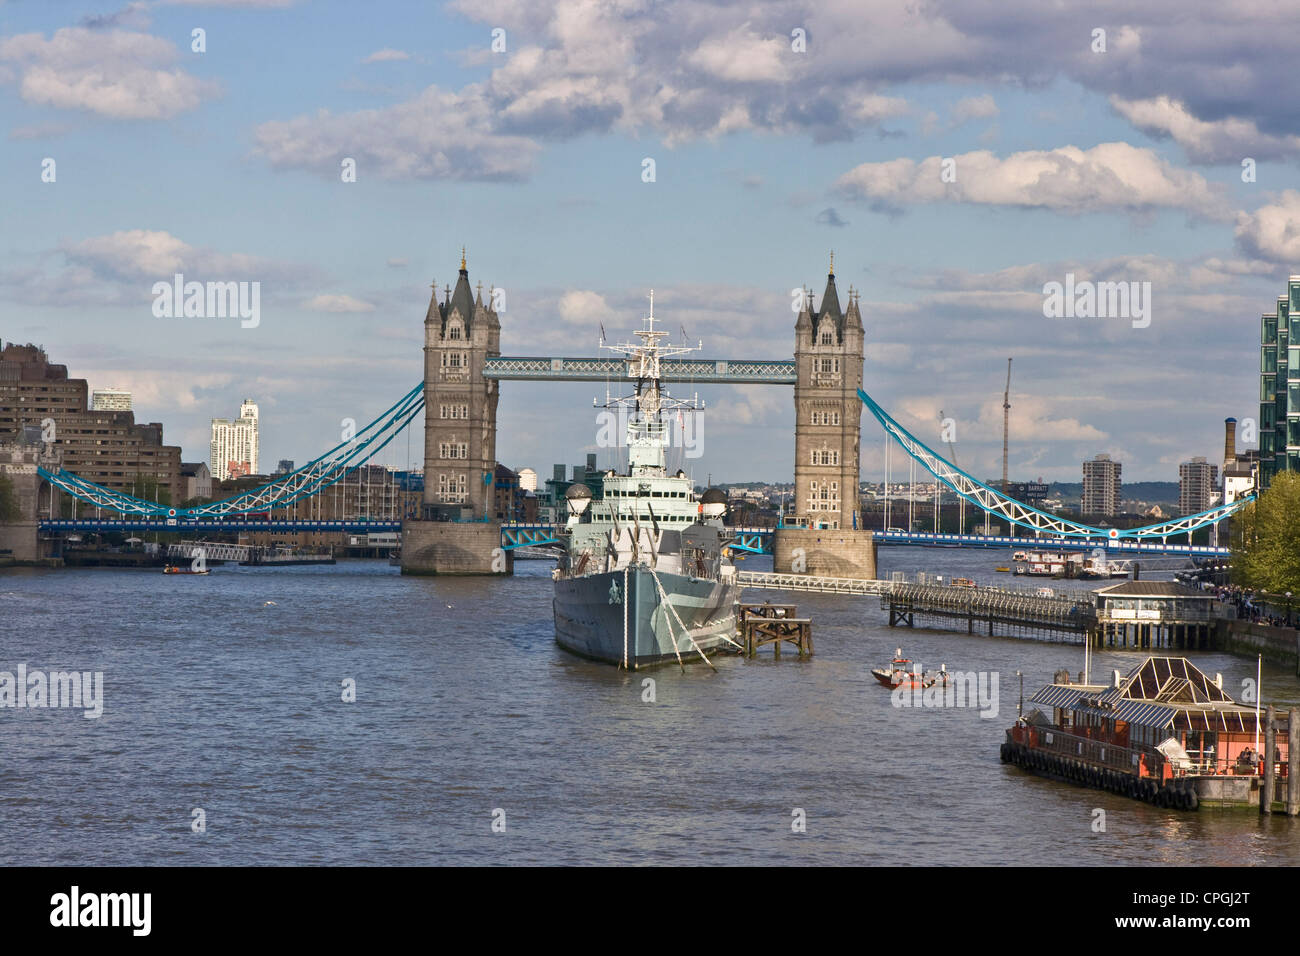 Panorama vista Voir scène de Tamise avec grade 1 énumérés le Tower Bridge et HMS Belfast navire musée Londres Angleterre Europe Banque D'Images